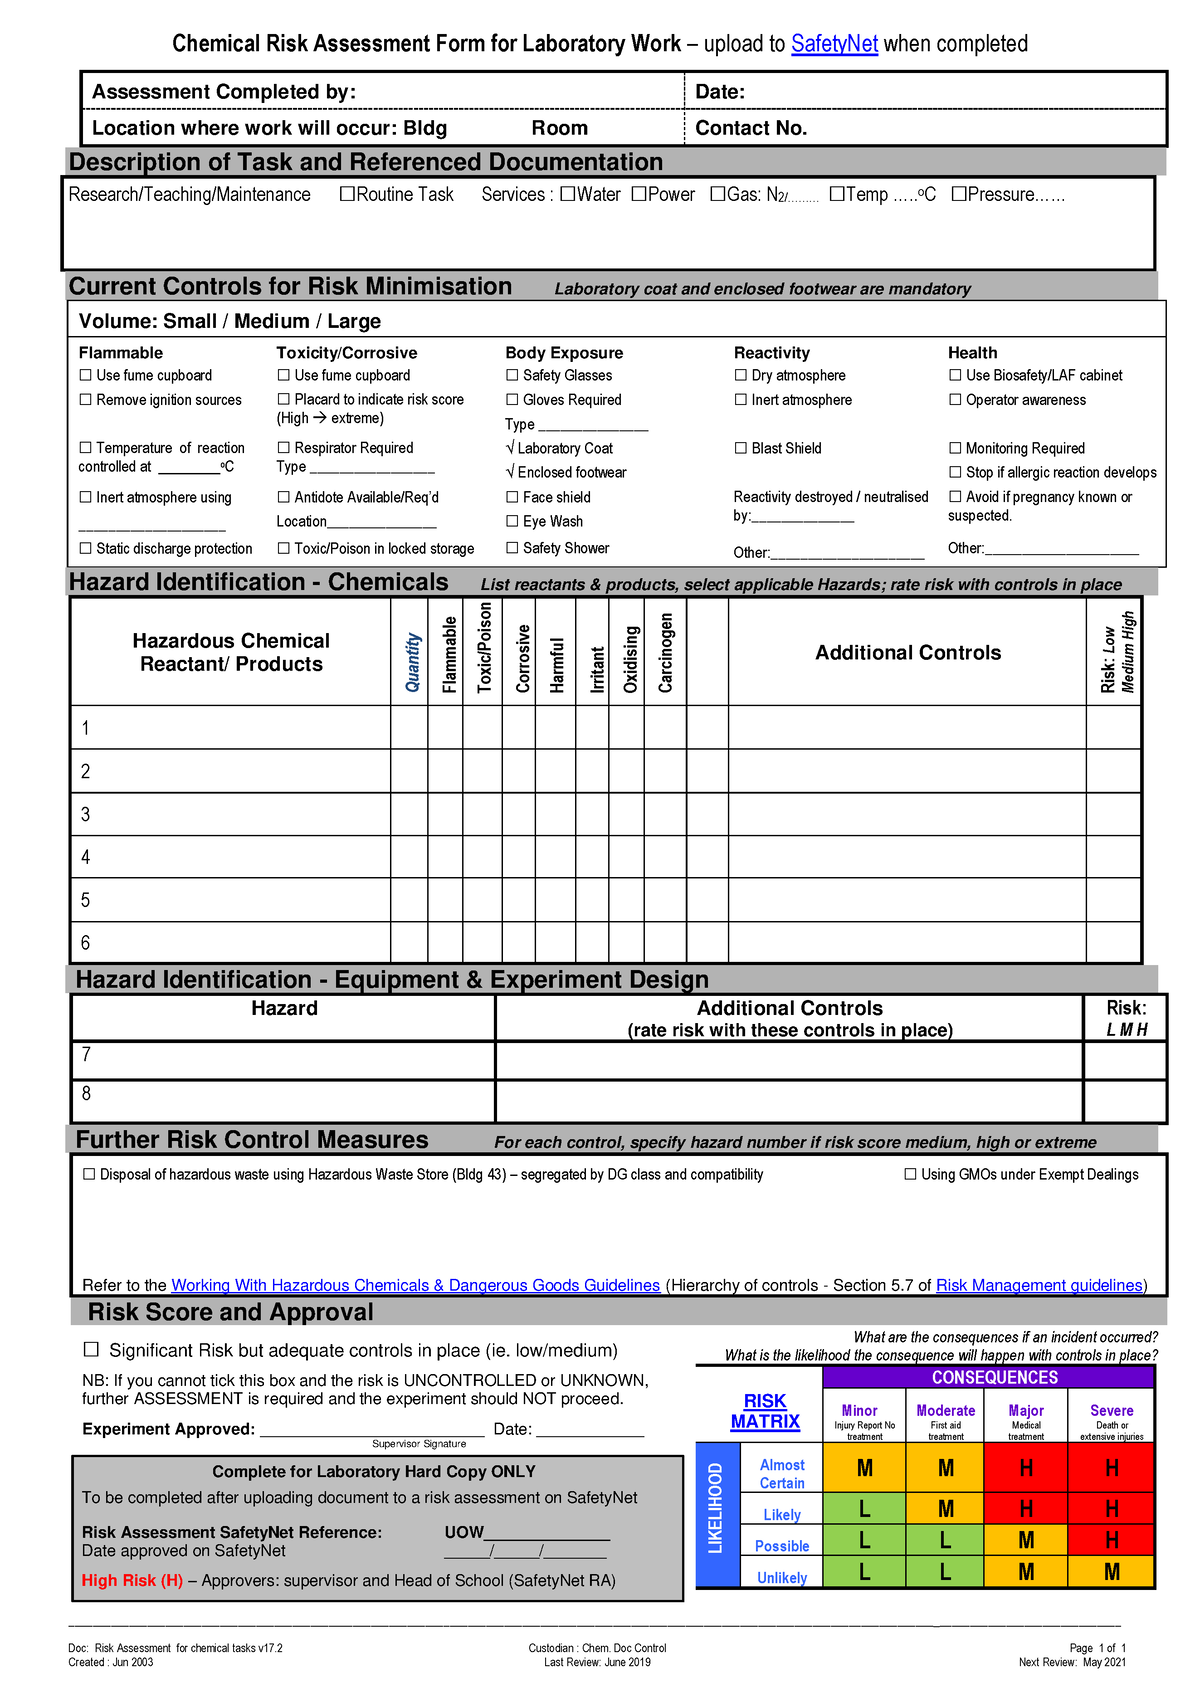 Risk Assessment For Chemical Tasks Chem214 Chemical Risk Assessment Form For Laboratory Work 